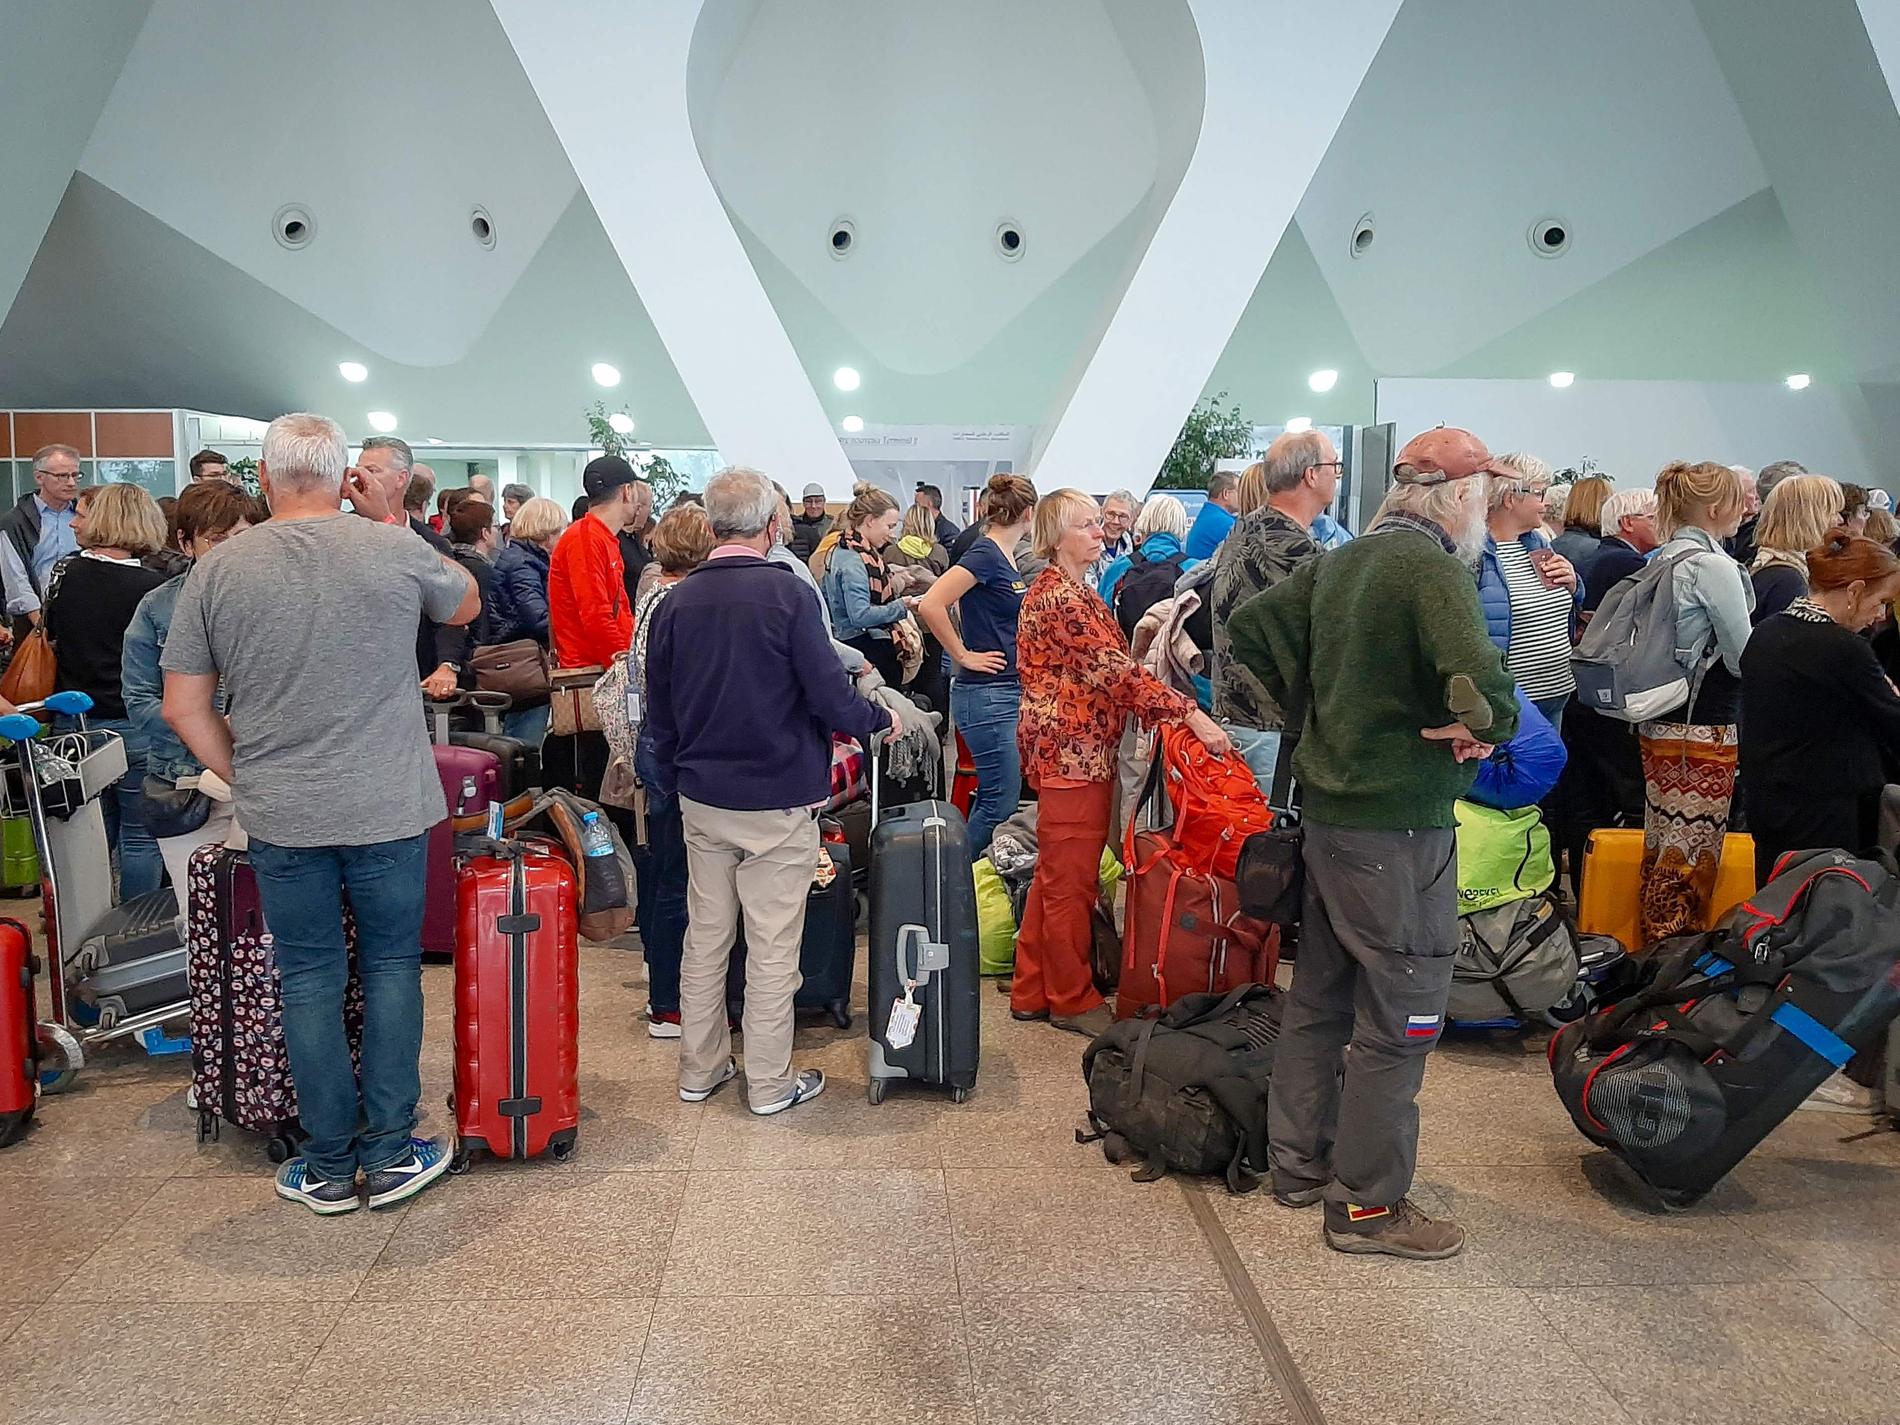 Passagerare köar på flygplatsen i Marrakesh på söndagen där flera specialchartrade plan hämtar hem tusentals strandsatta européer sedan Marocko ställt in alla reguljärflyg.